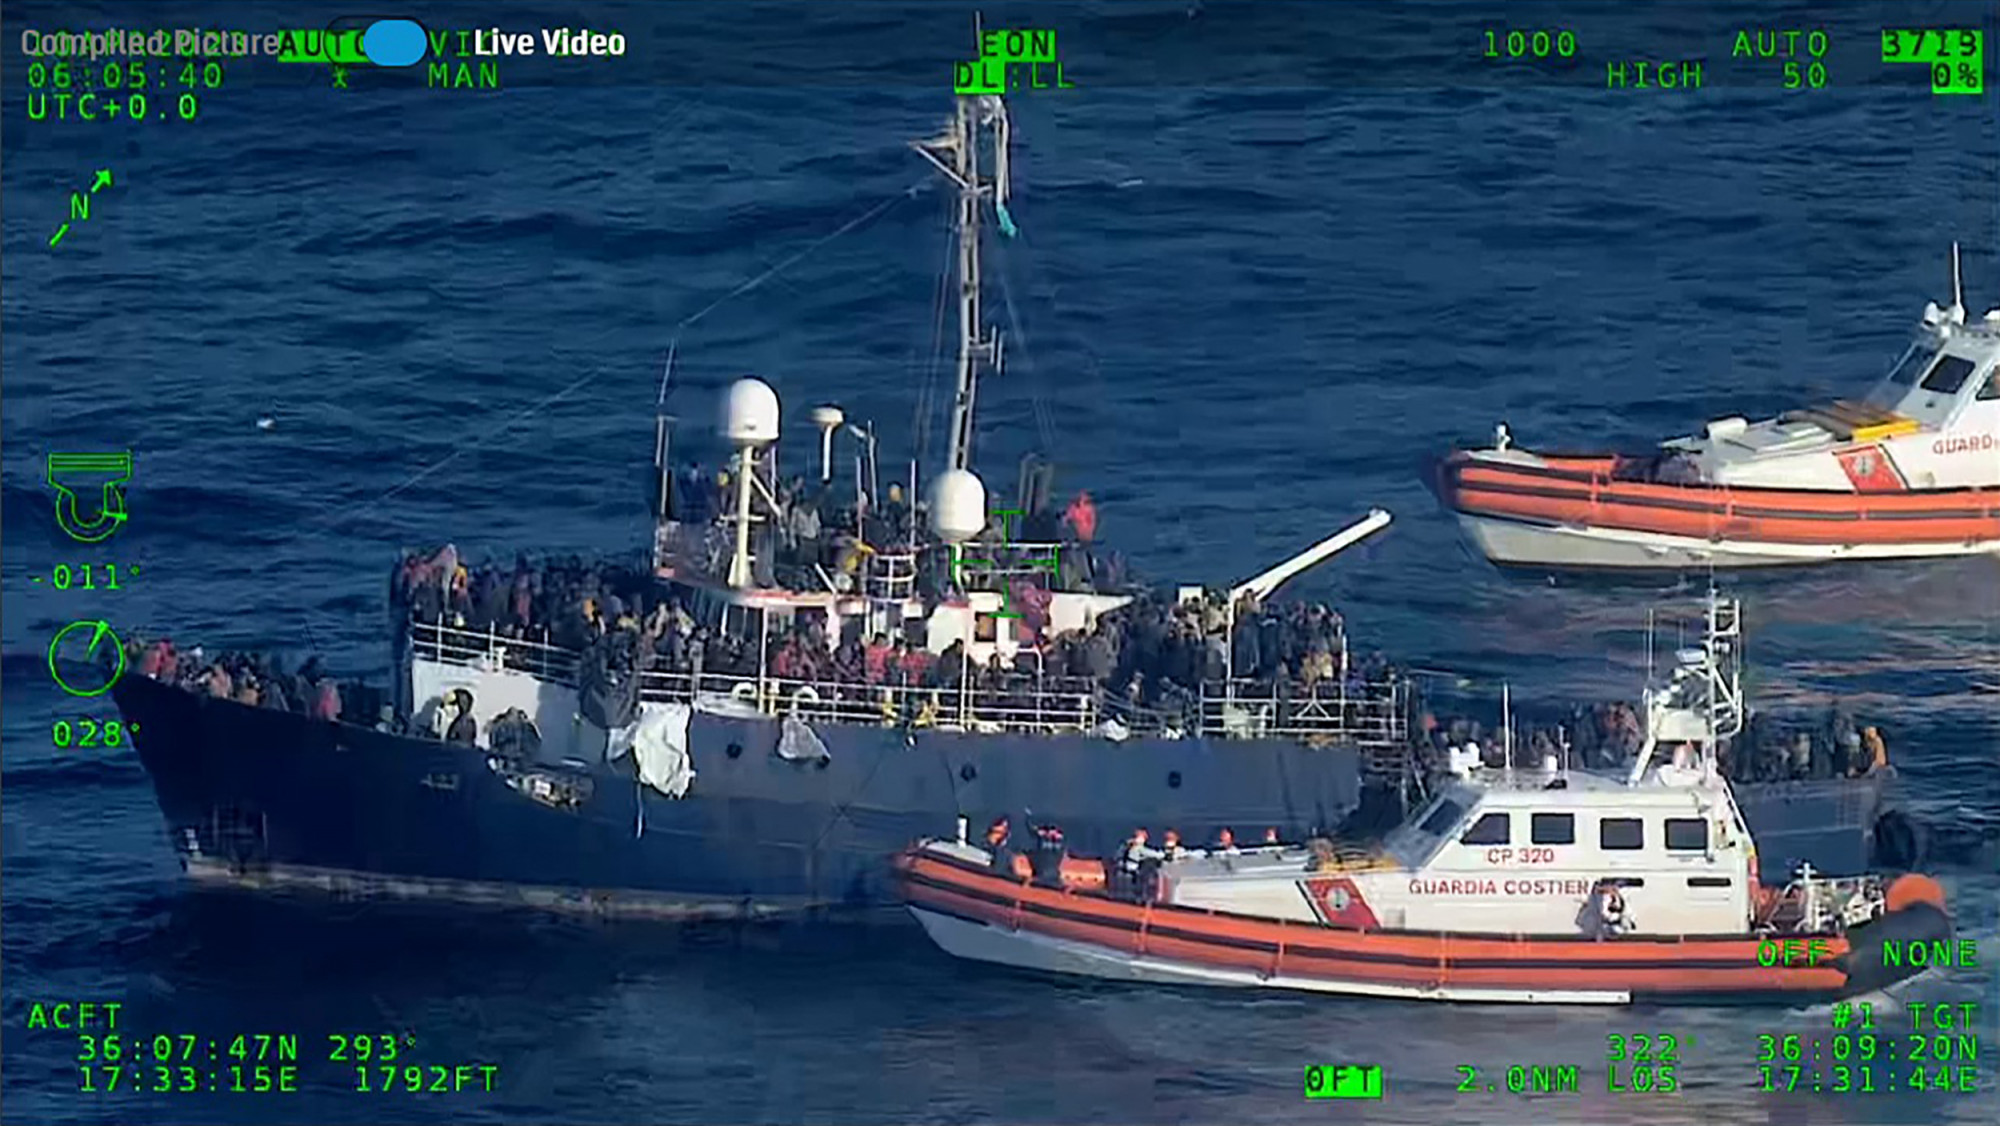 Olaszország kimenti azt az 1200 menedékkérőt, akik két hajóban sodródnak a Földközi-tengeren